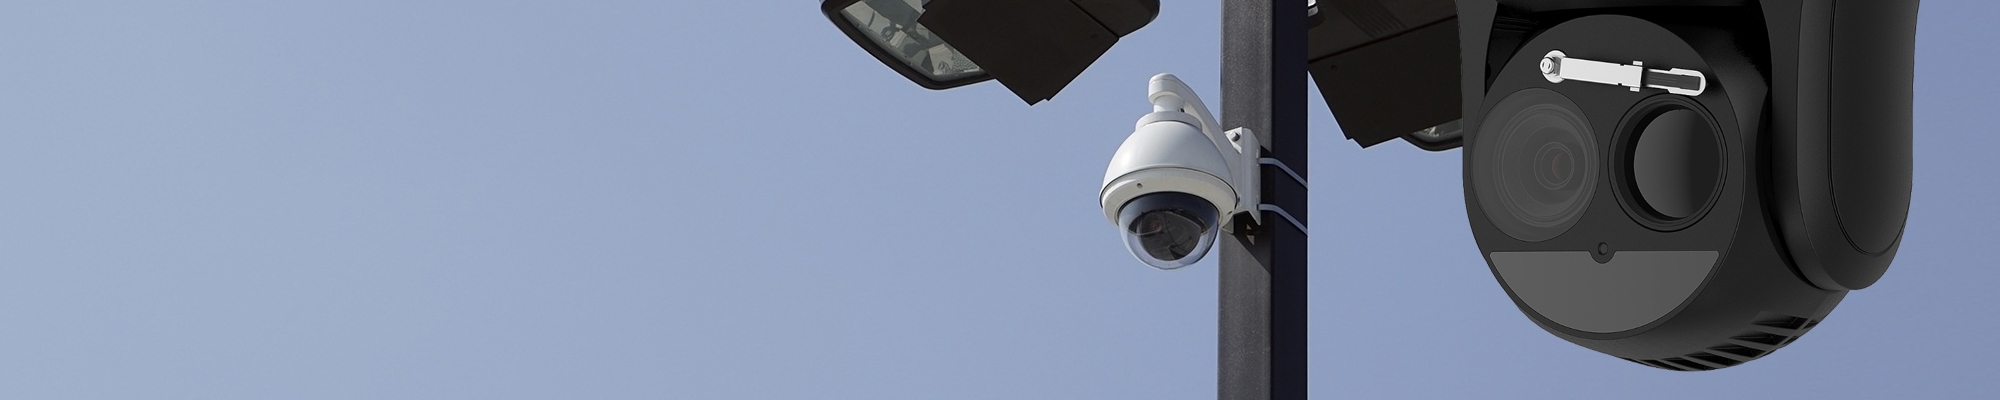 CCTV Roehampton